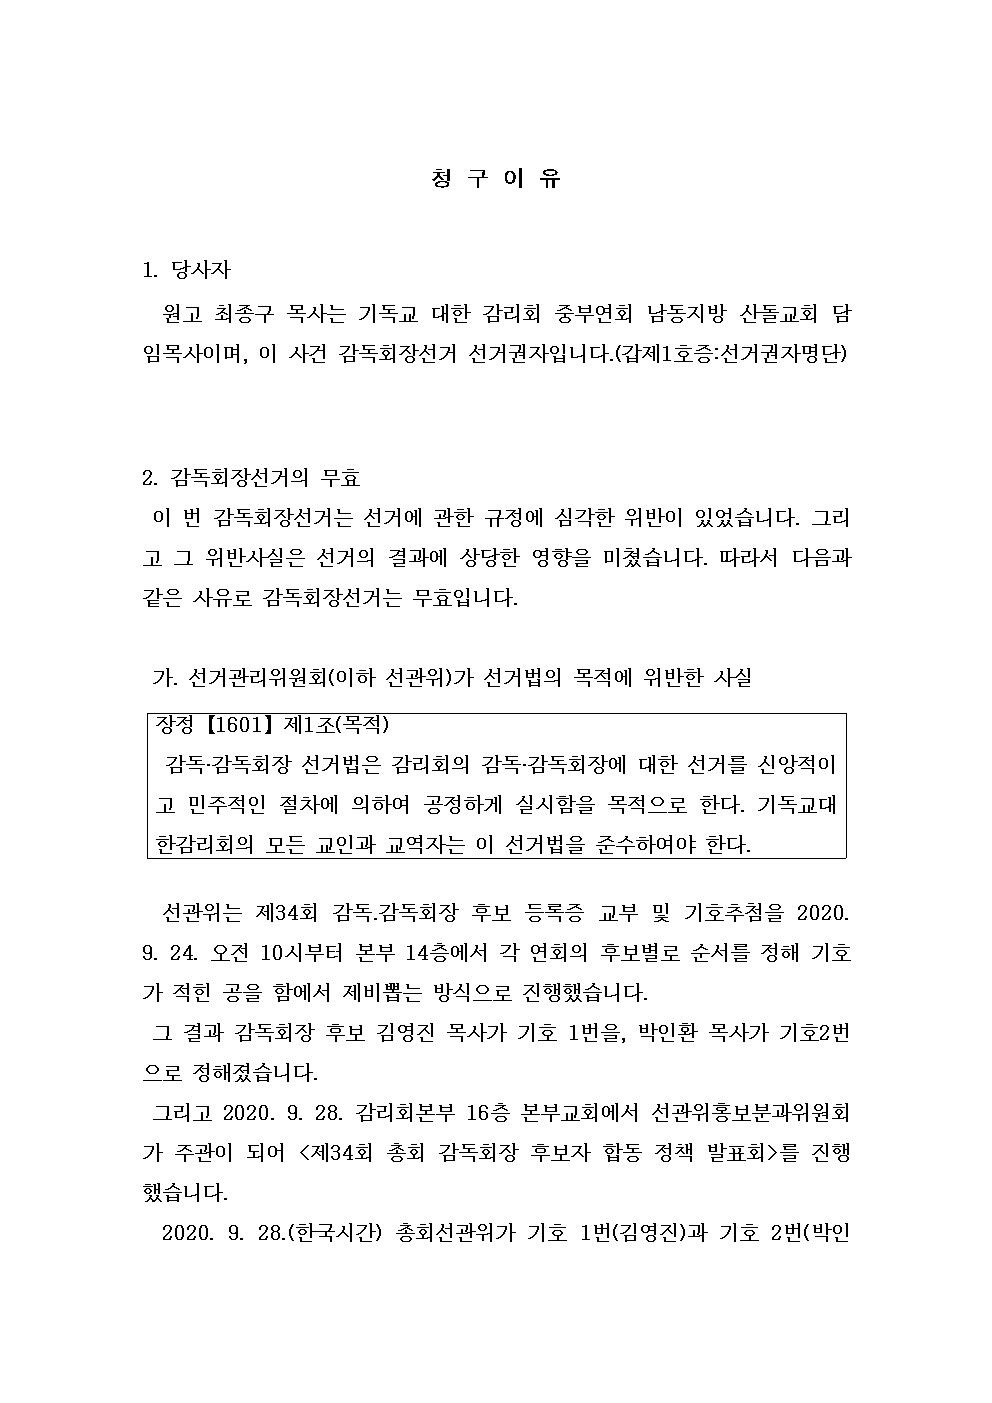 제34회 총회 감독회장선거 무효소송 고소장